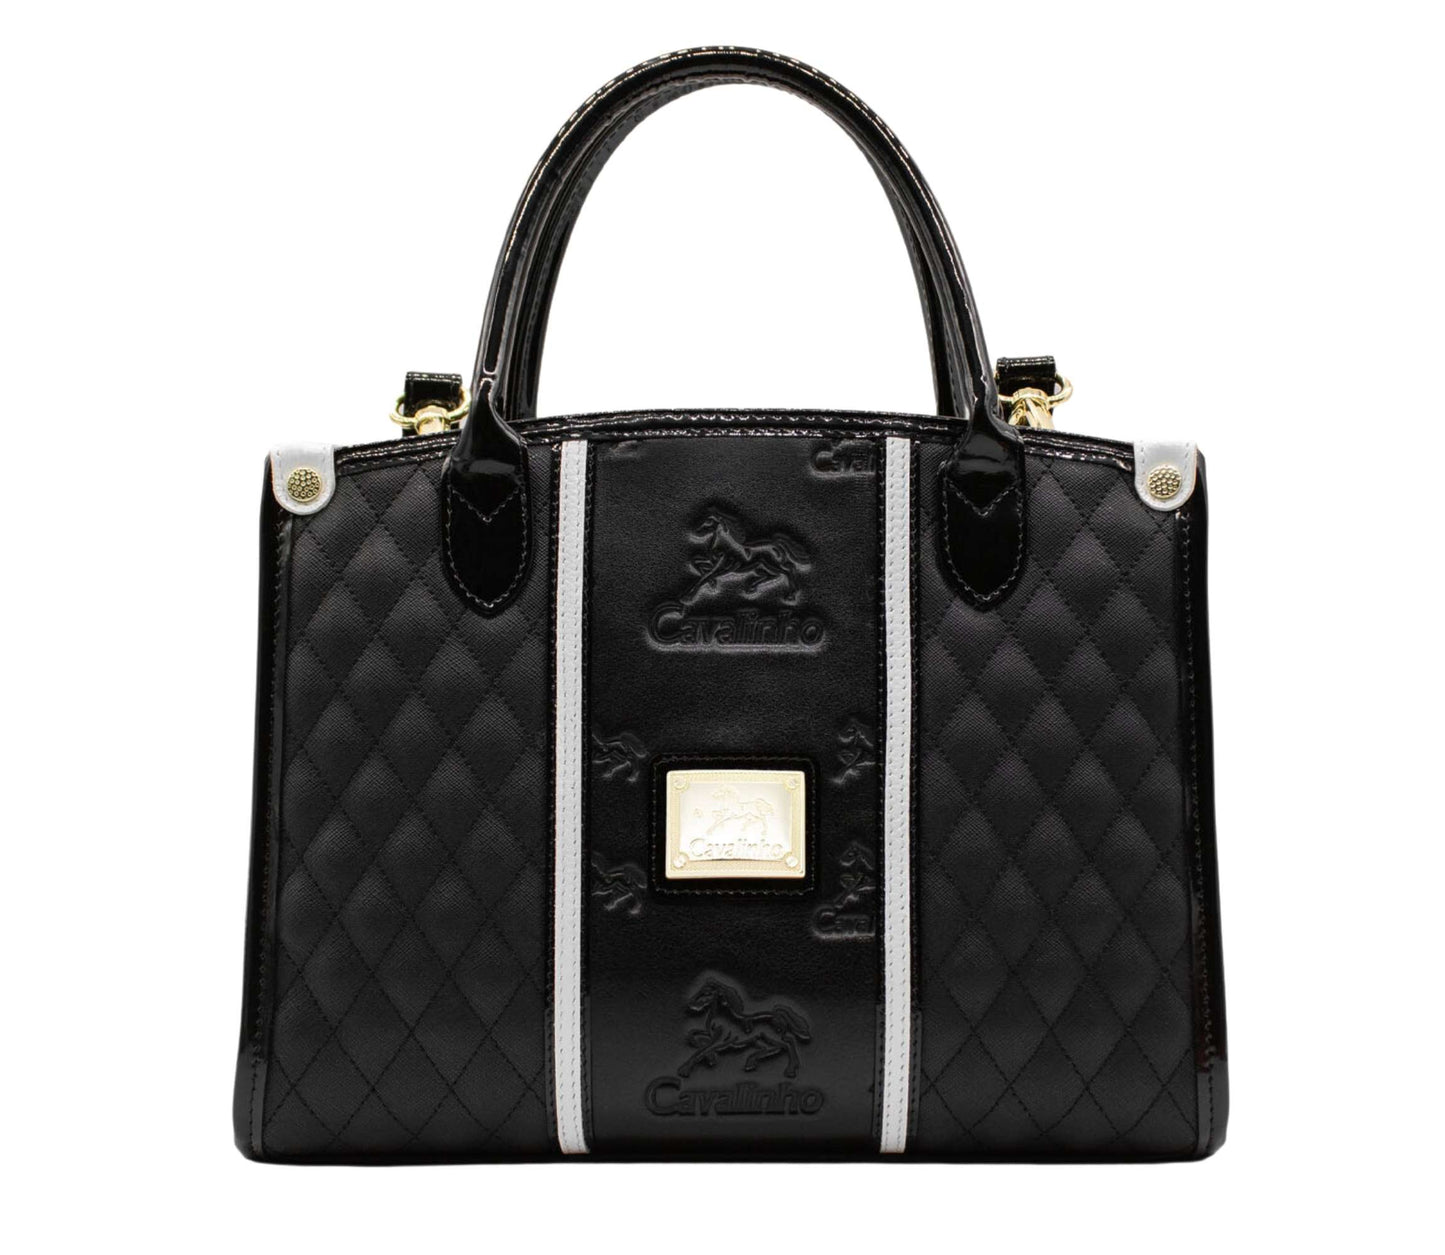 Cavalinho Royal Handbag - Black and White - 18390480.21.99